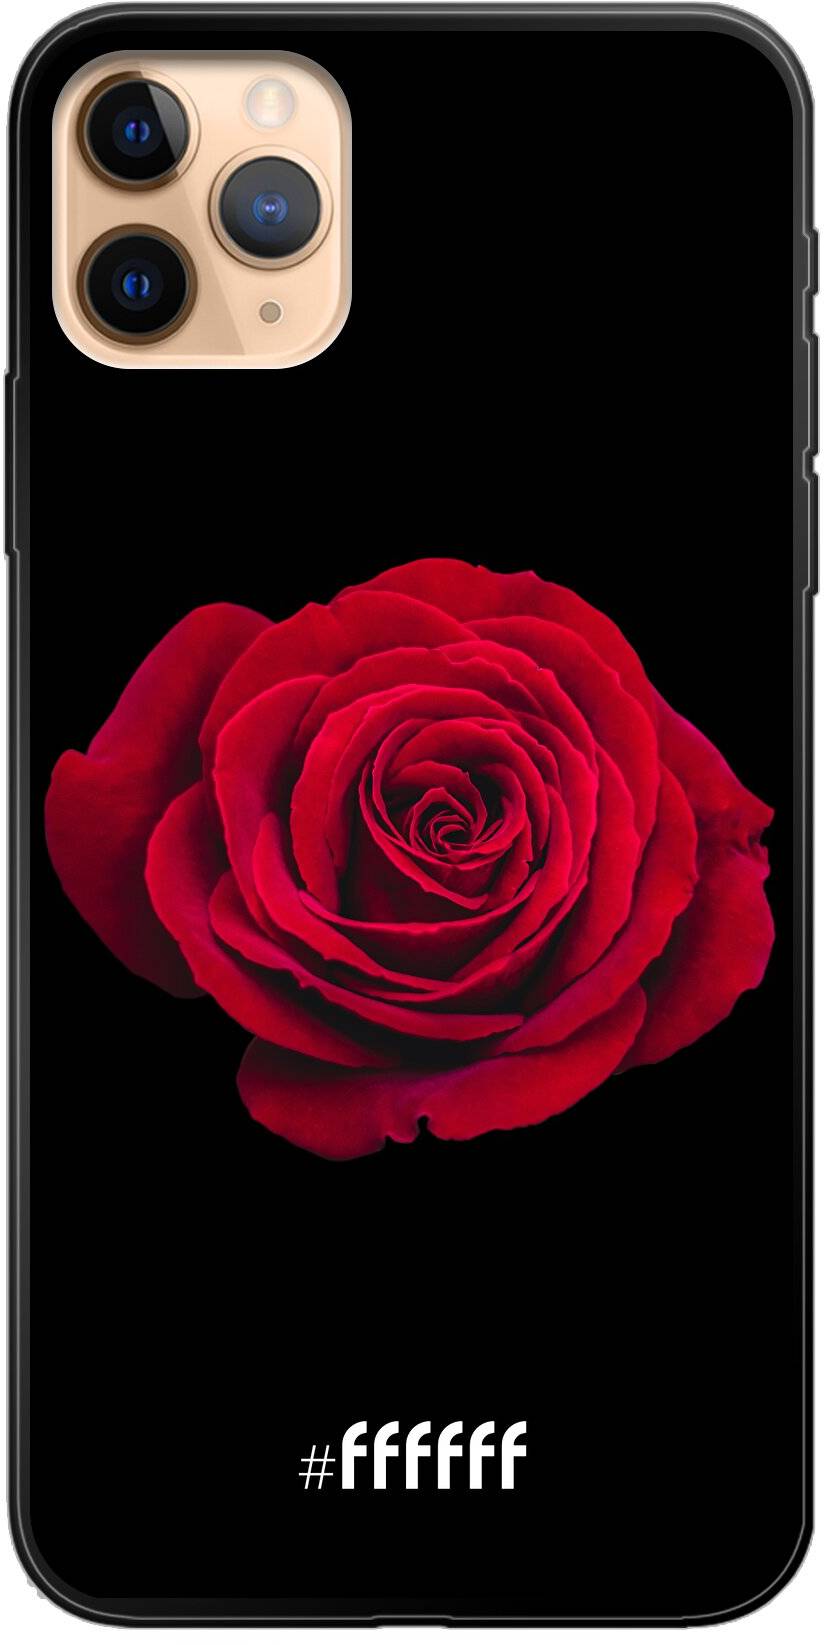 Radiant Rose iPhone 11 Pro Max